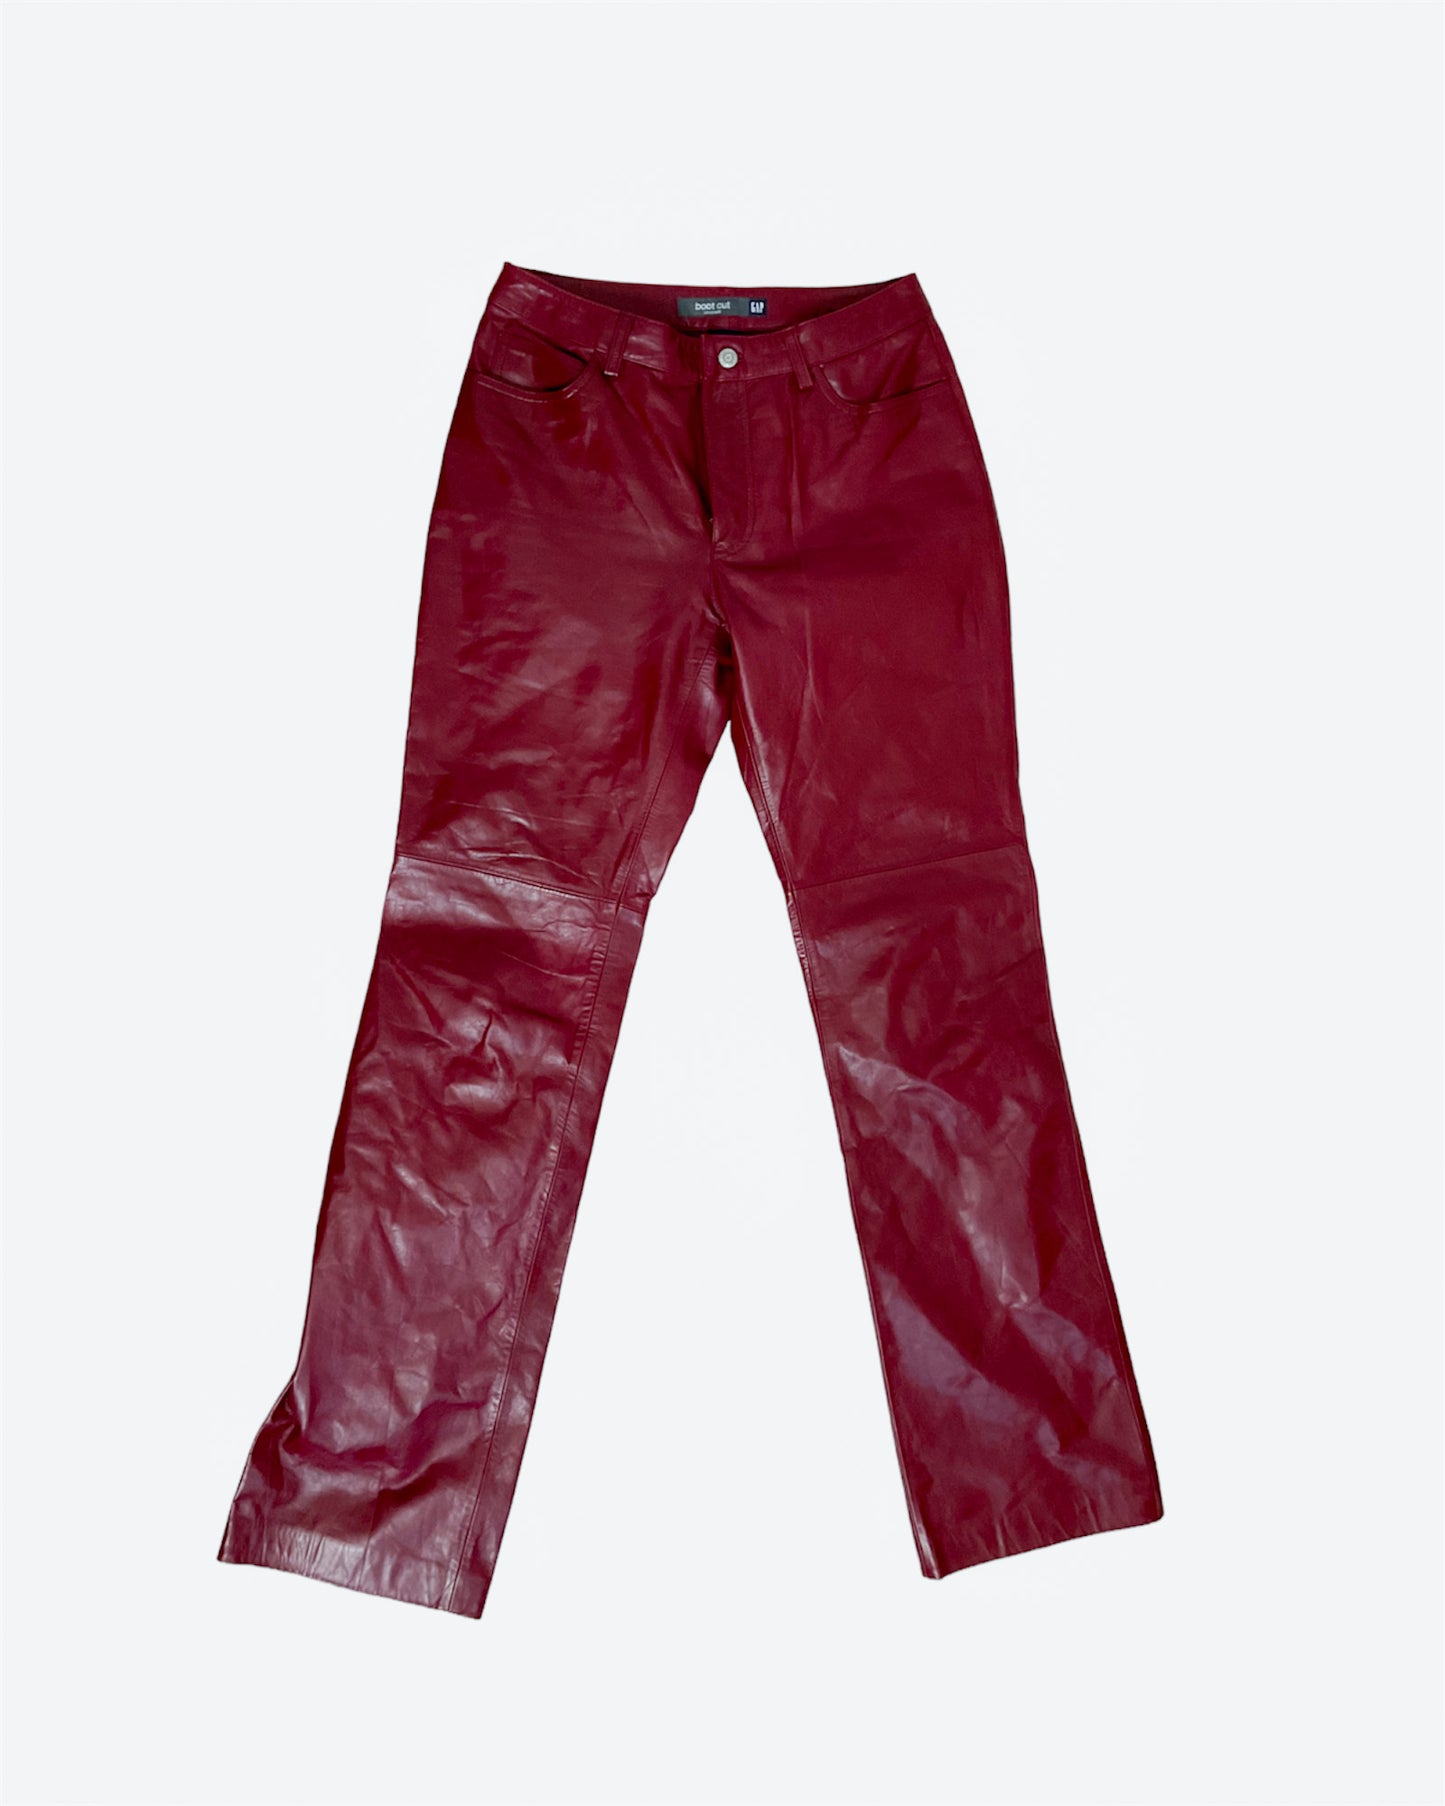 Vintage GAP Genuine Leather Pants